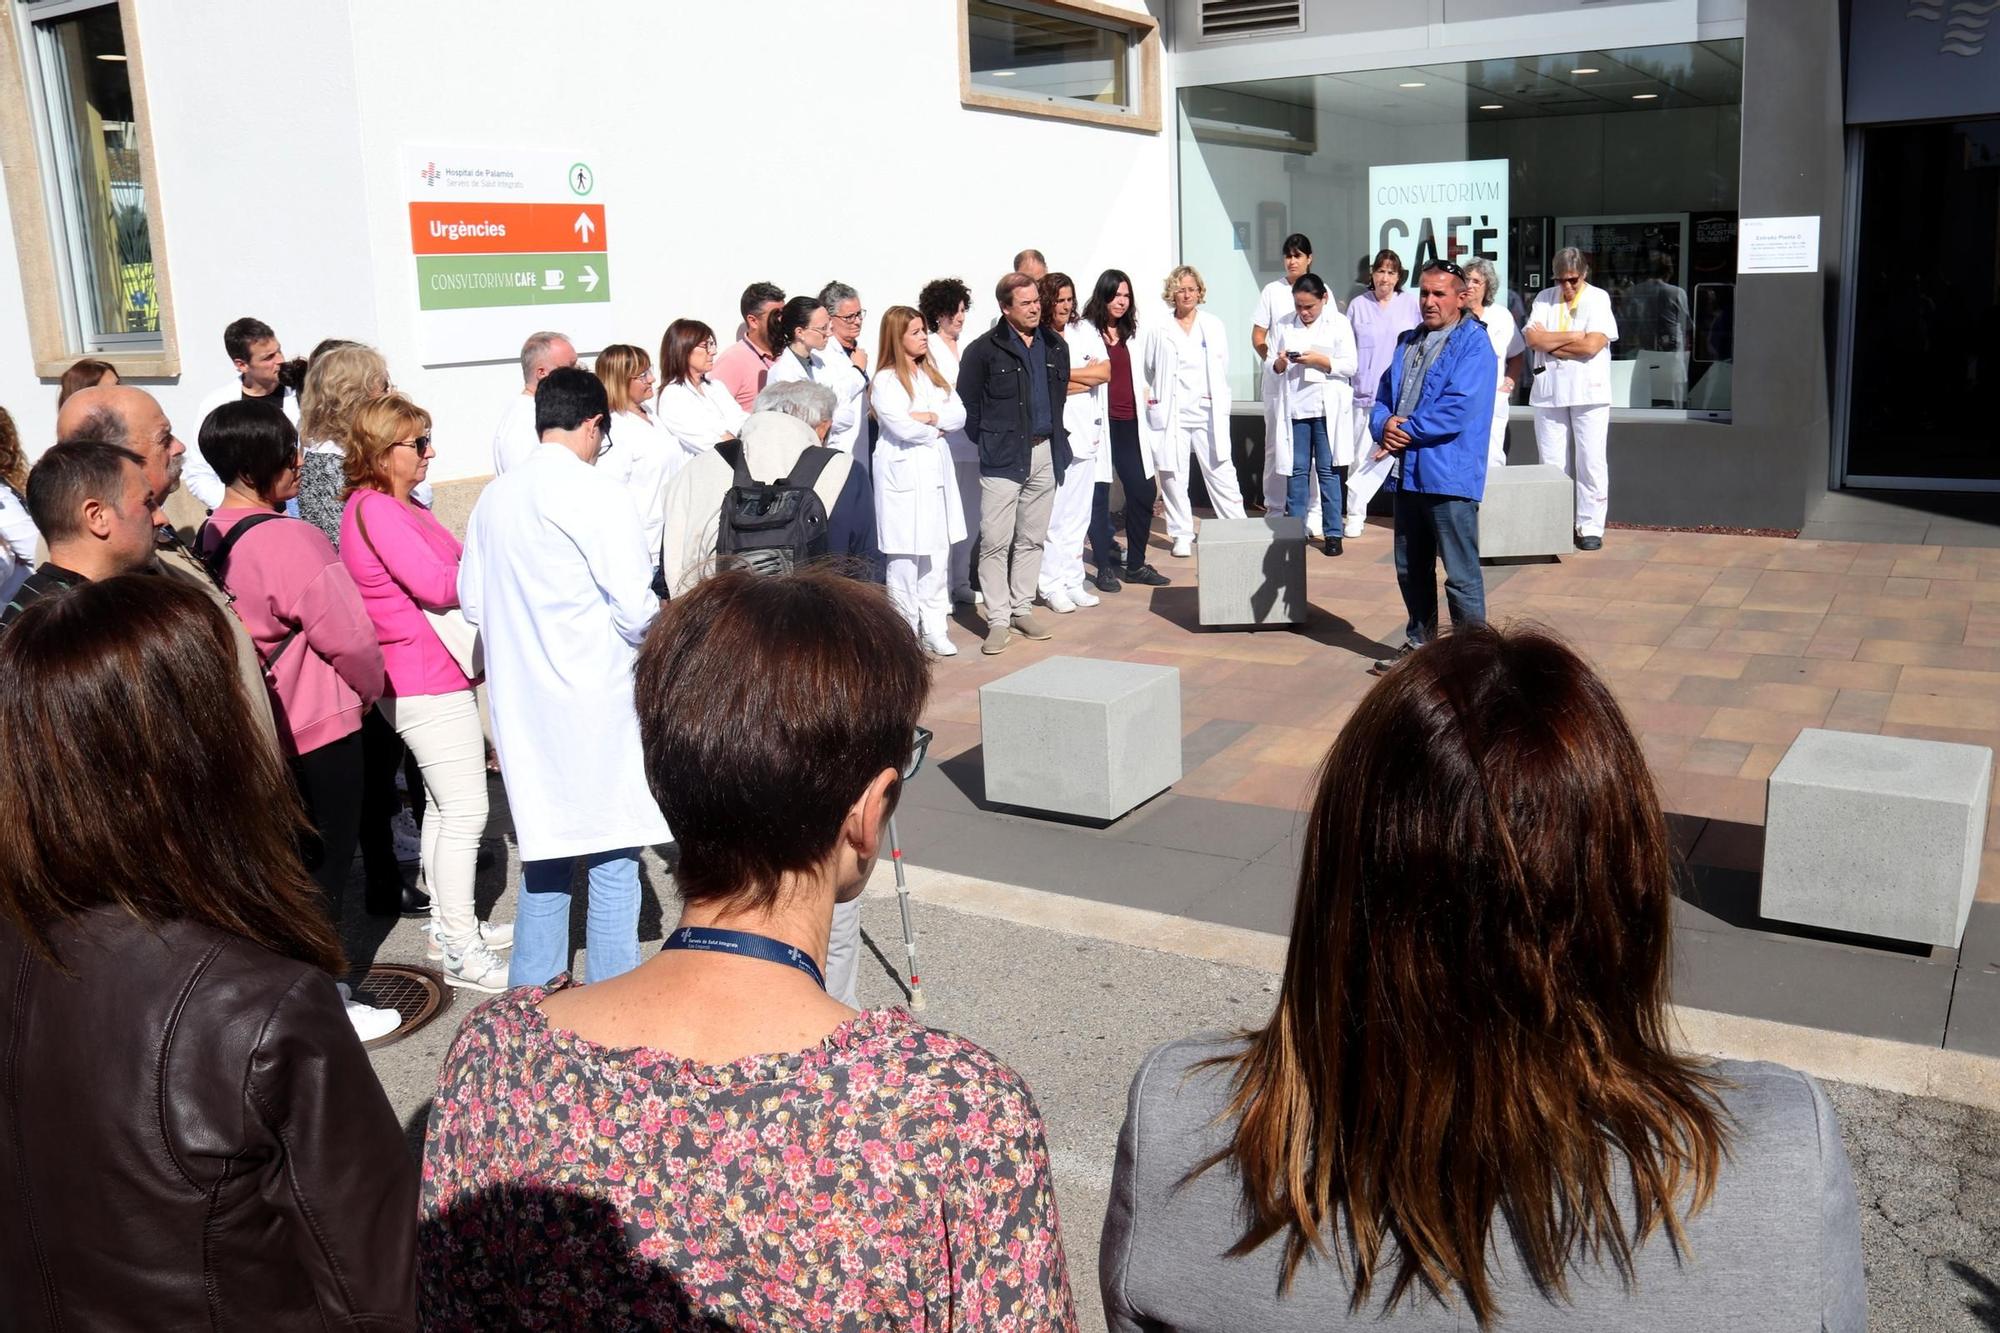 Una seixantena de treballadors es concentren a l&#039;hospital de Palamós en suport a dos metges palestins